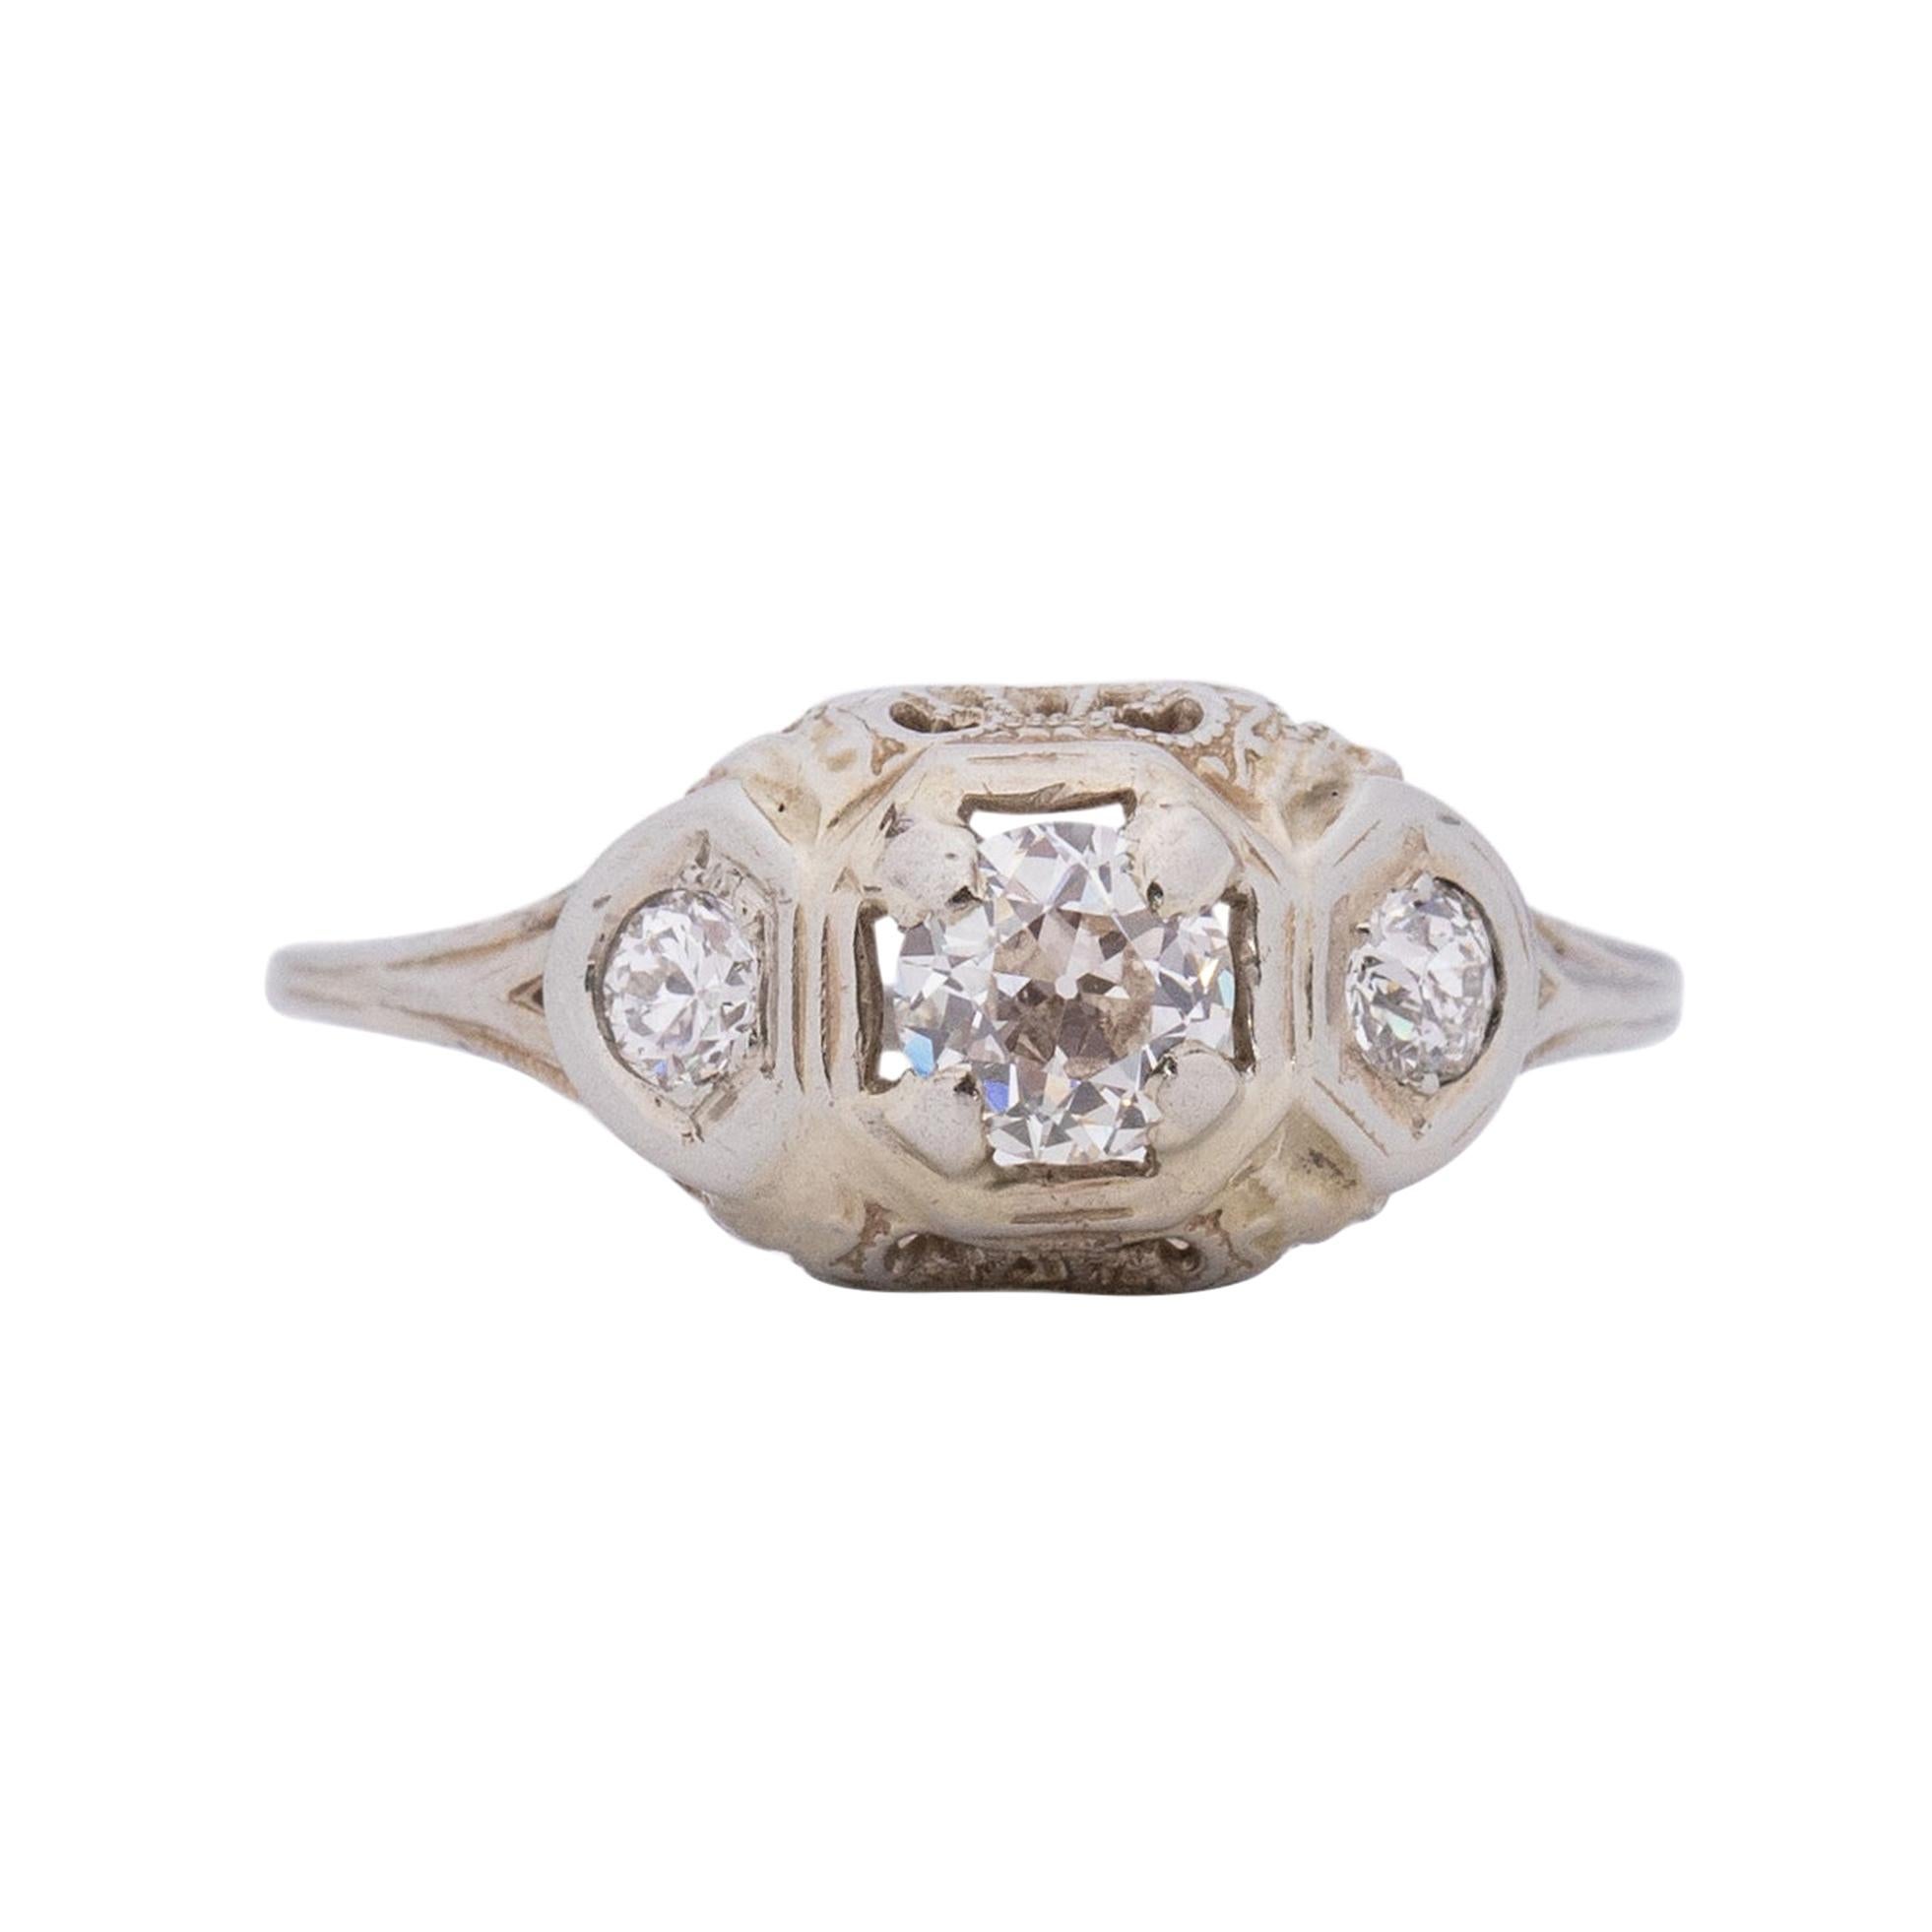 Circa 1910's Edwardian 0.45Ct Center 18K White Gold Three Stone Diamond Ring